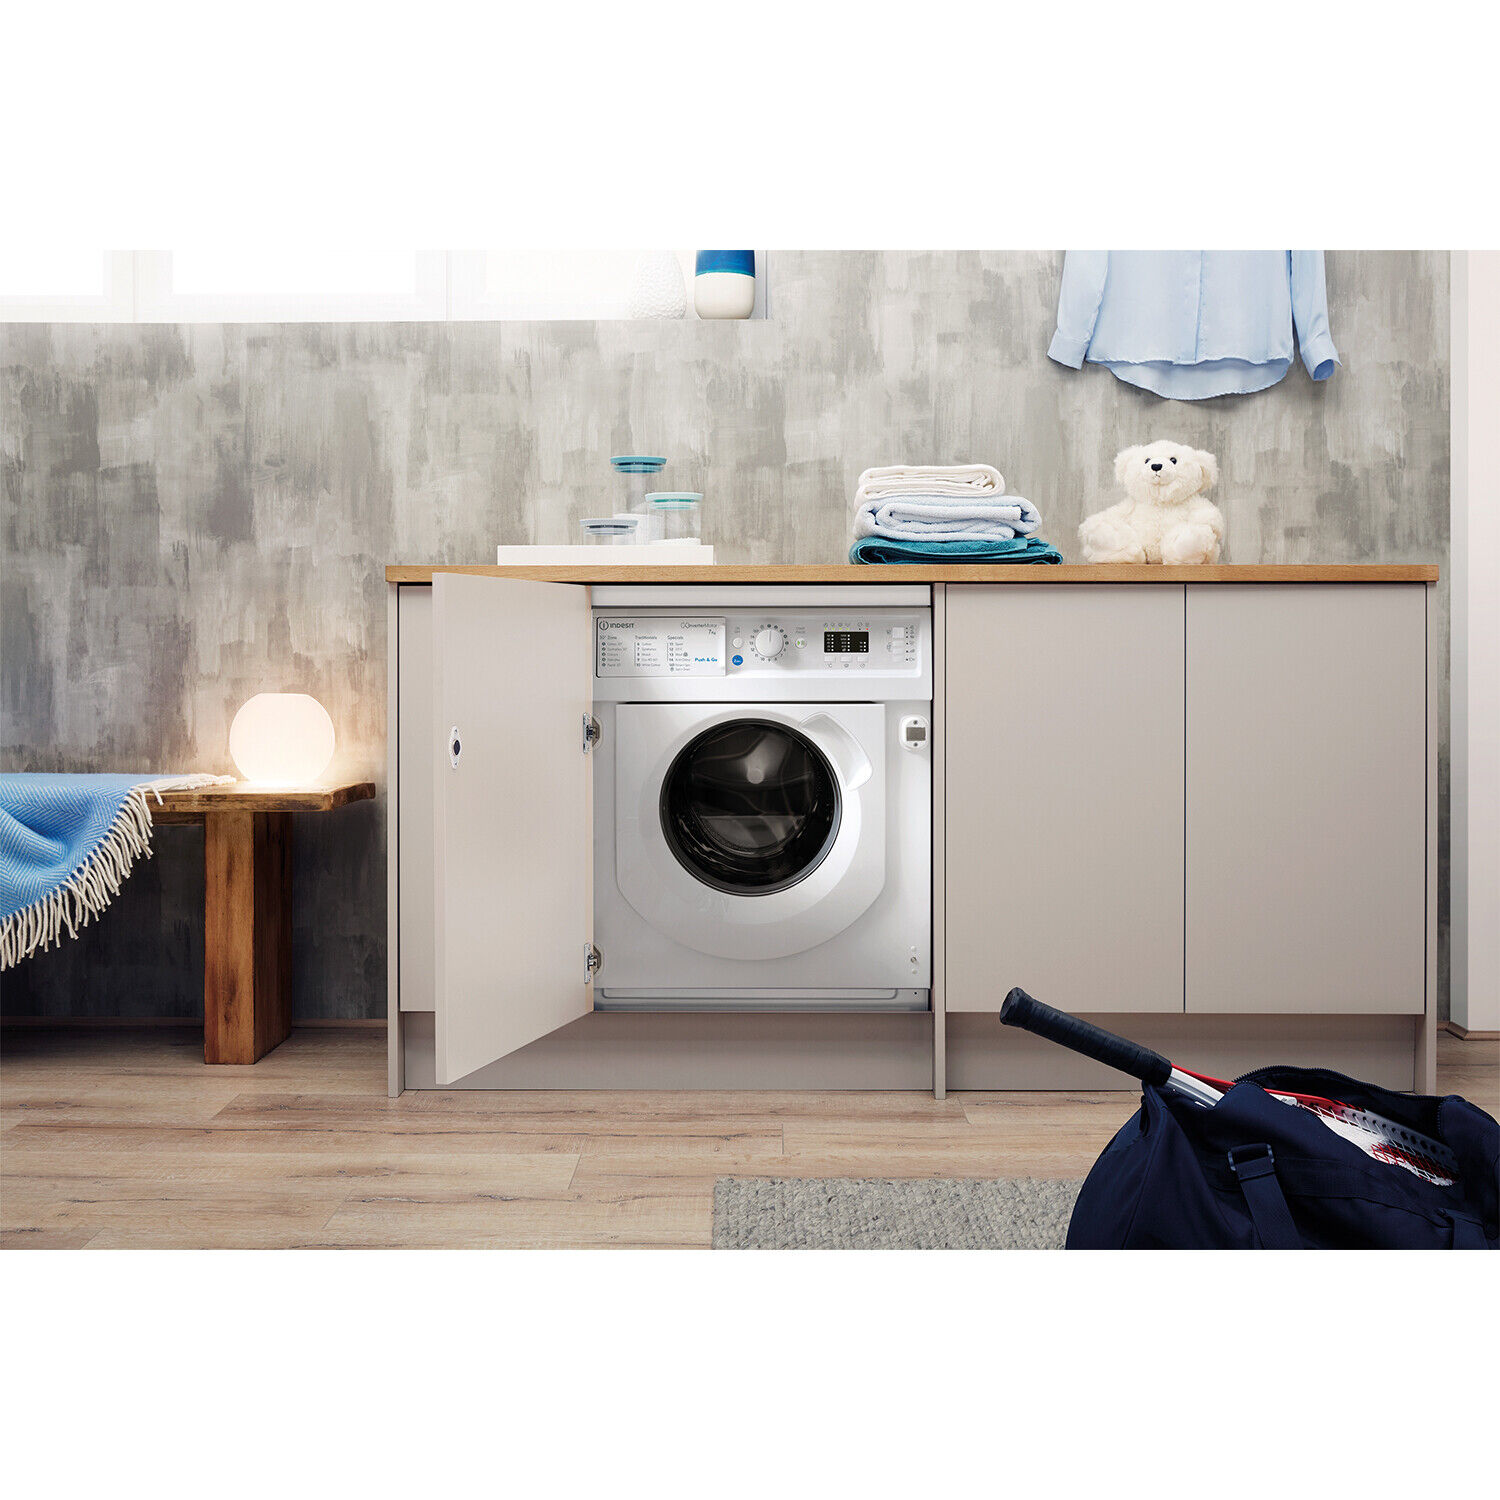 Indesit BIWMIL71252UKN Integrated Washing Machine - White